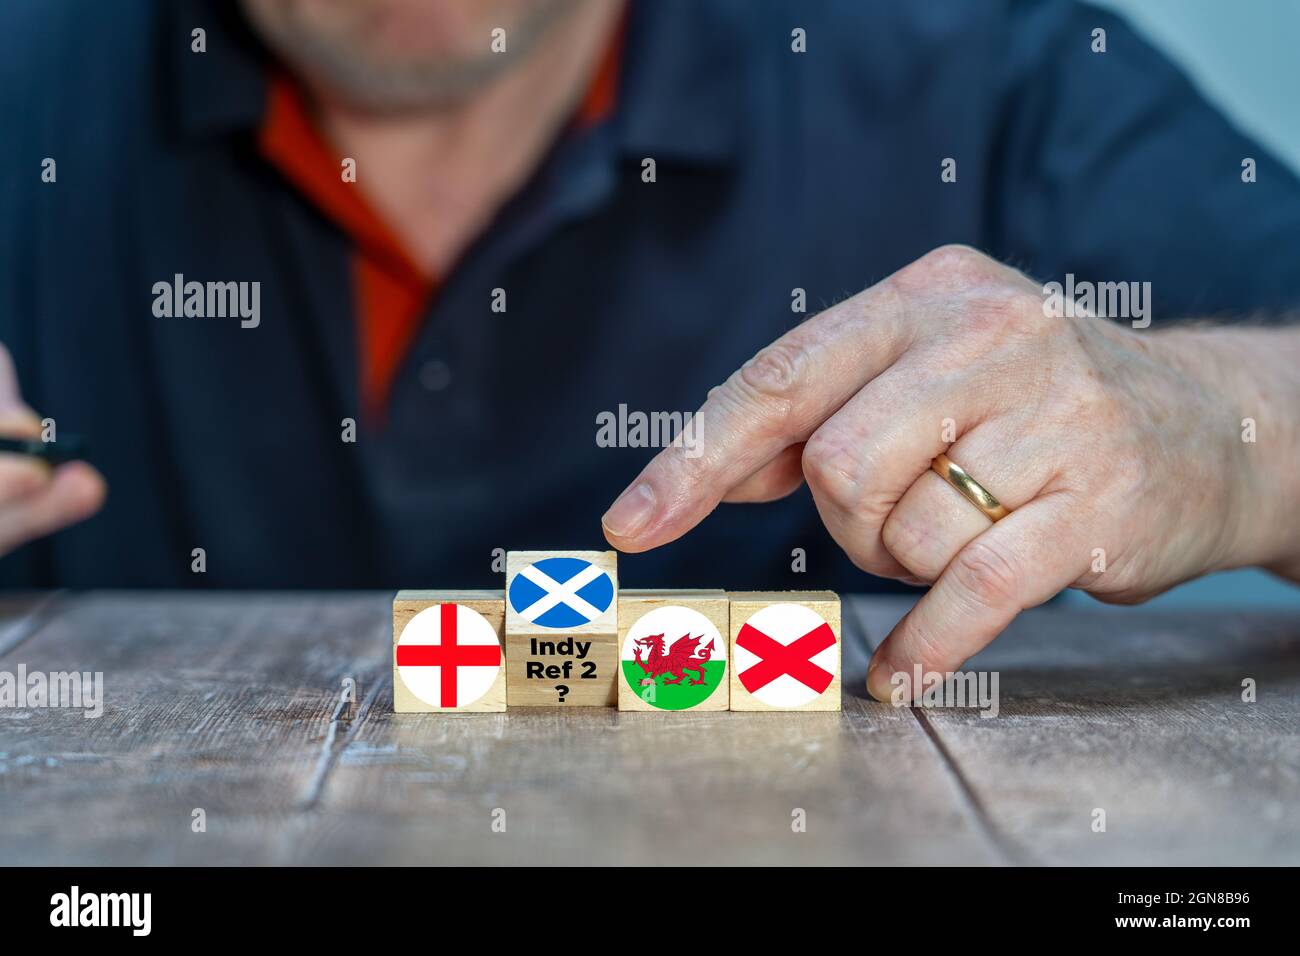 Konzept, das eine mögliche schottische Abstimmungs-Abstimmung darstellt, wird es eine zweite Abstimmung geben, um Schottland aus der Union zu nehmen Stockfoto